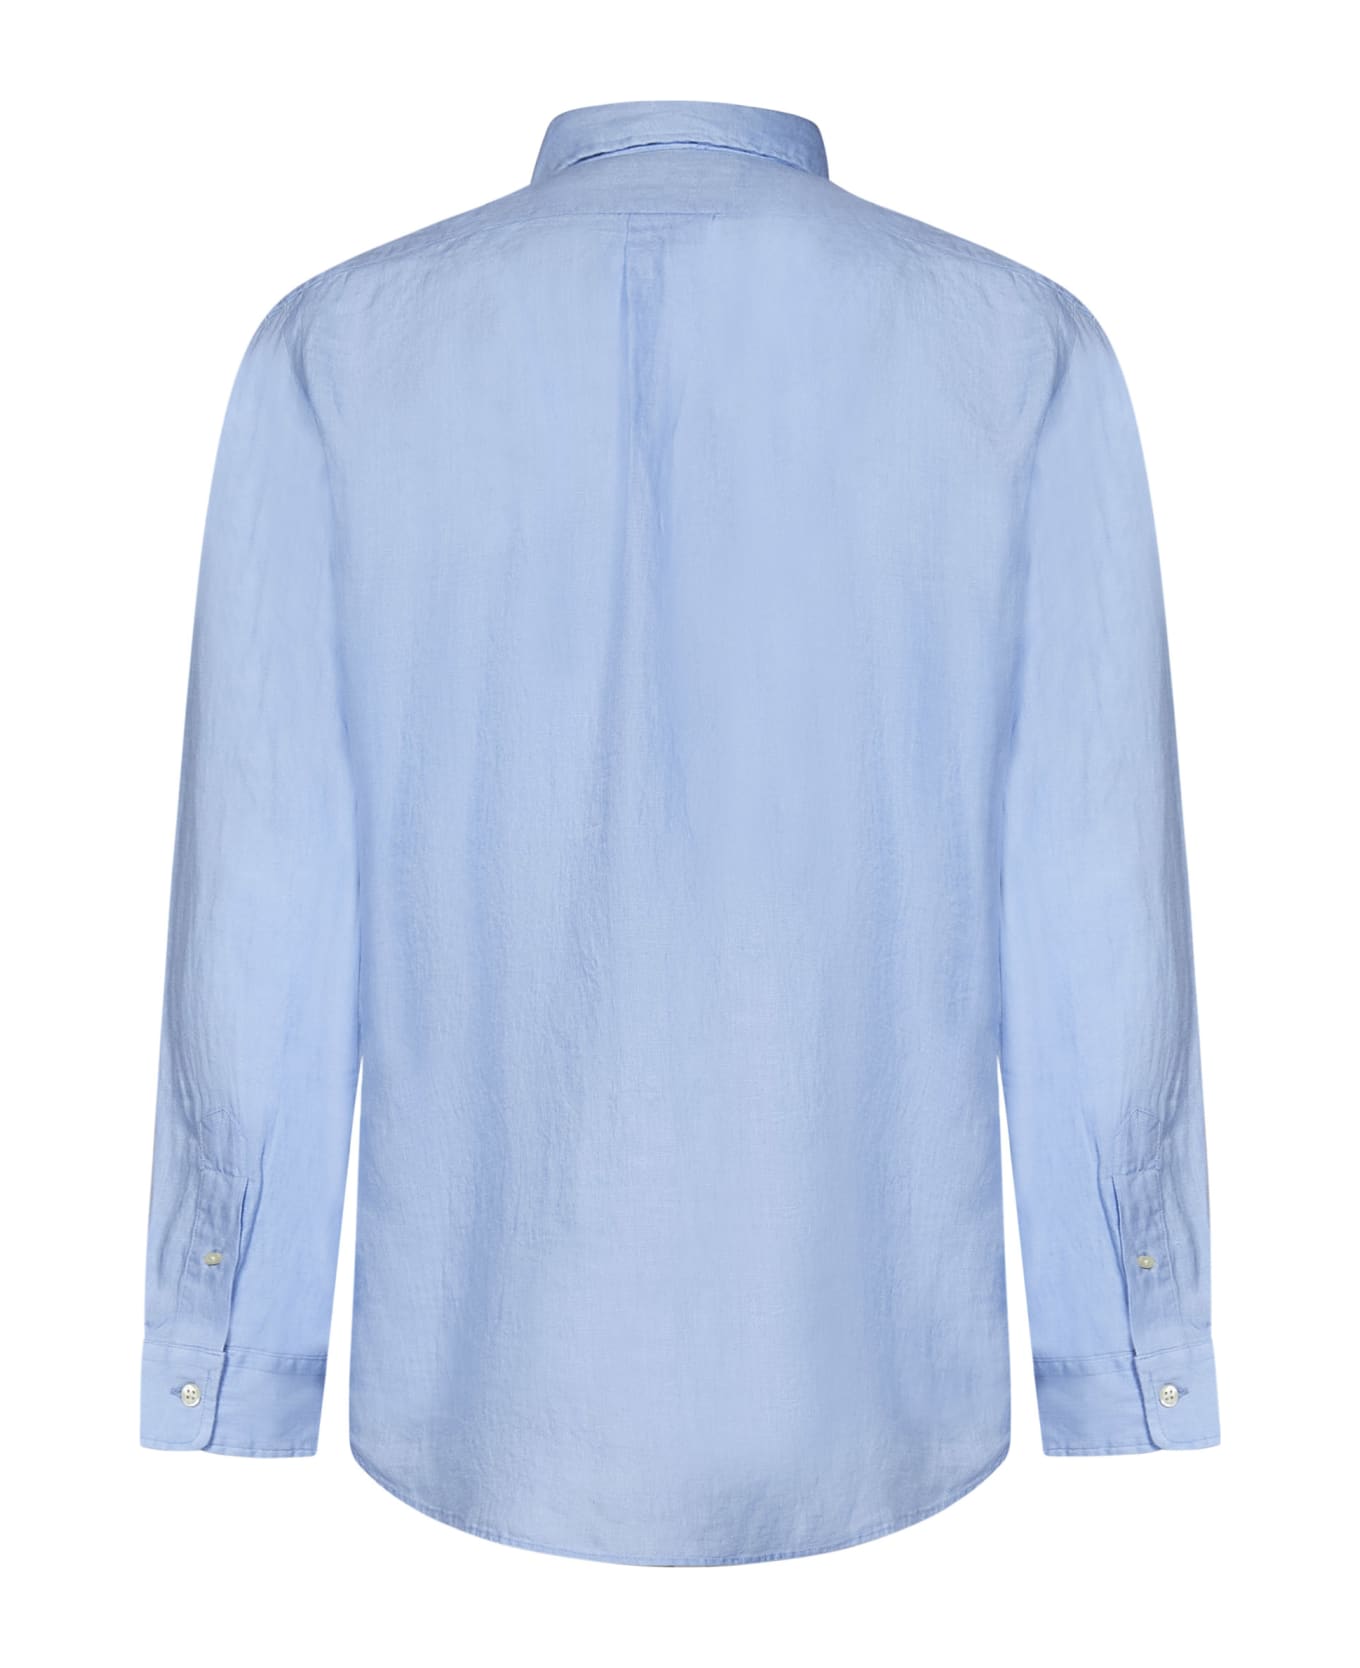 Polo Ralph Lauren Shirt - Clear Blue